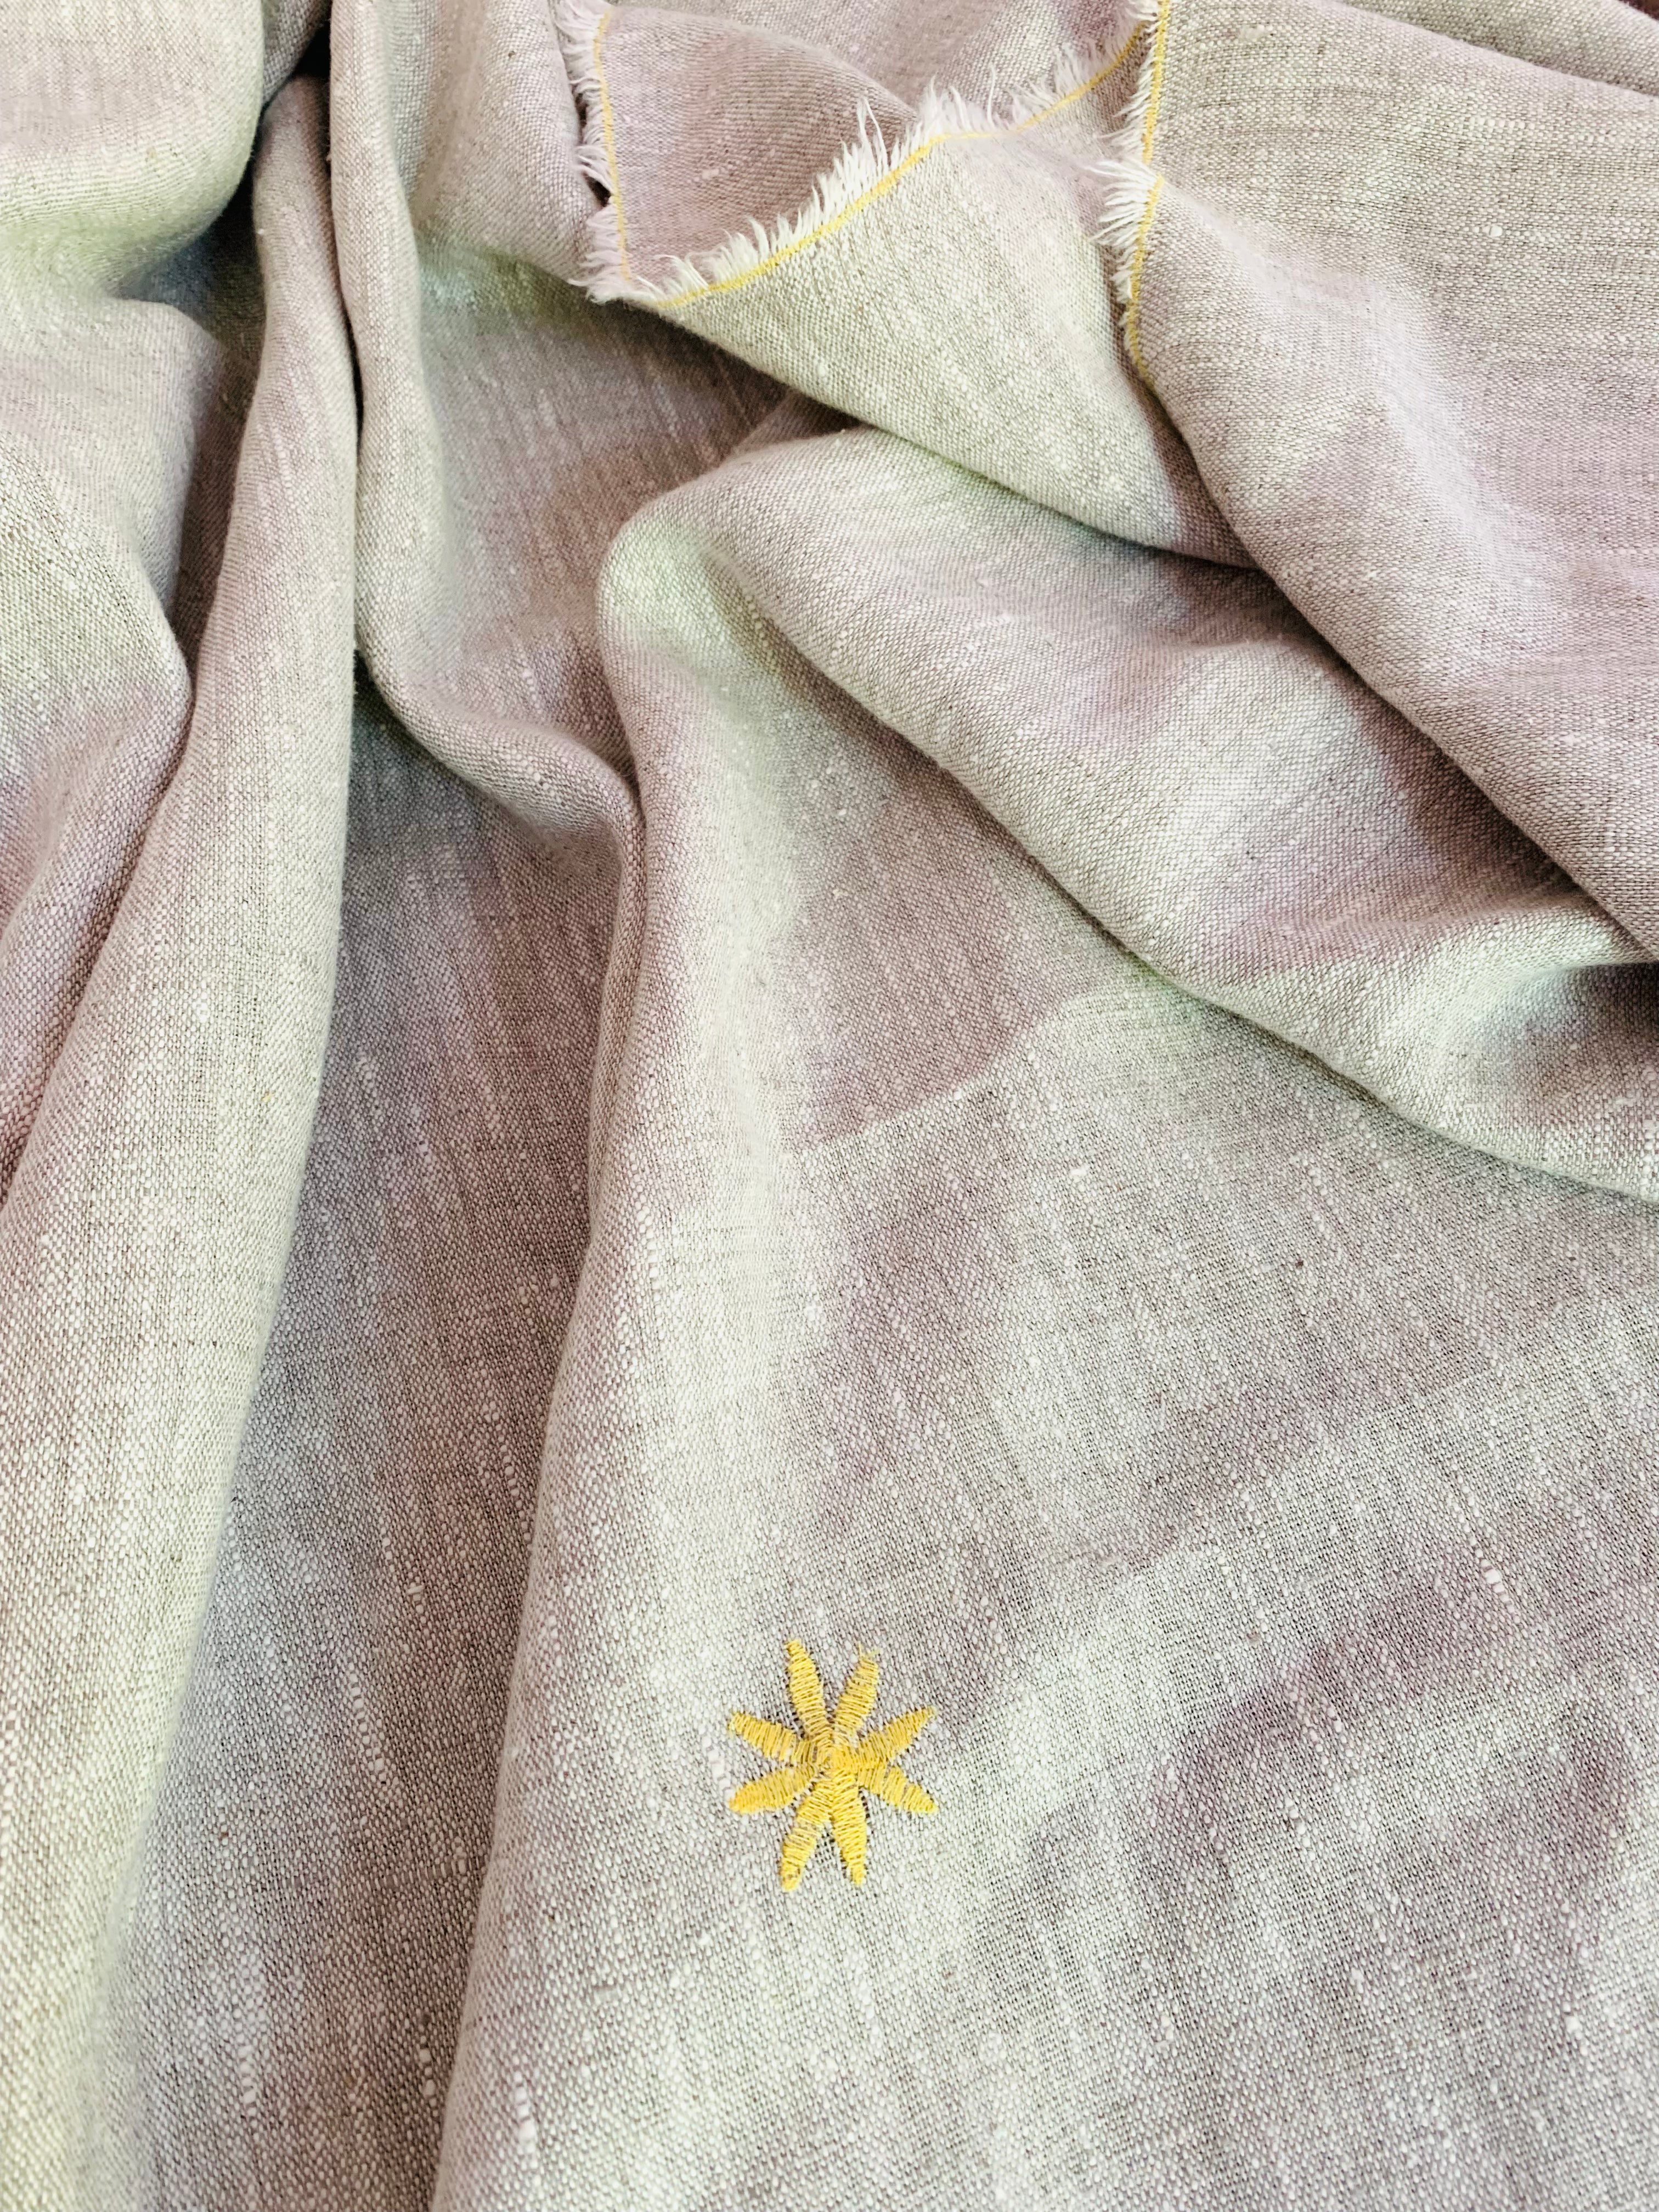 Just a Throw…Überwurf, Decke, Plaid aus dickem Leinen mit gelber Blüte